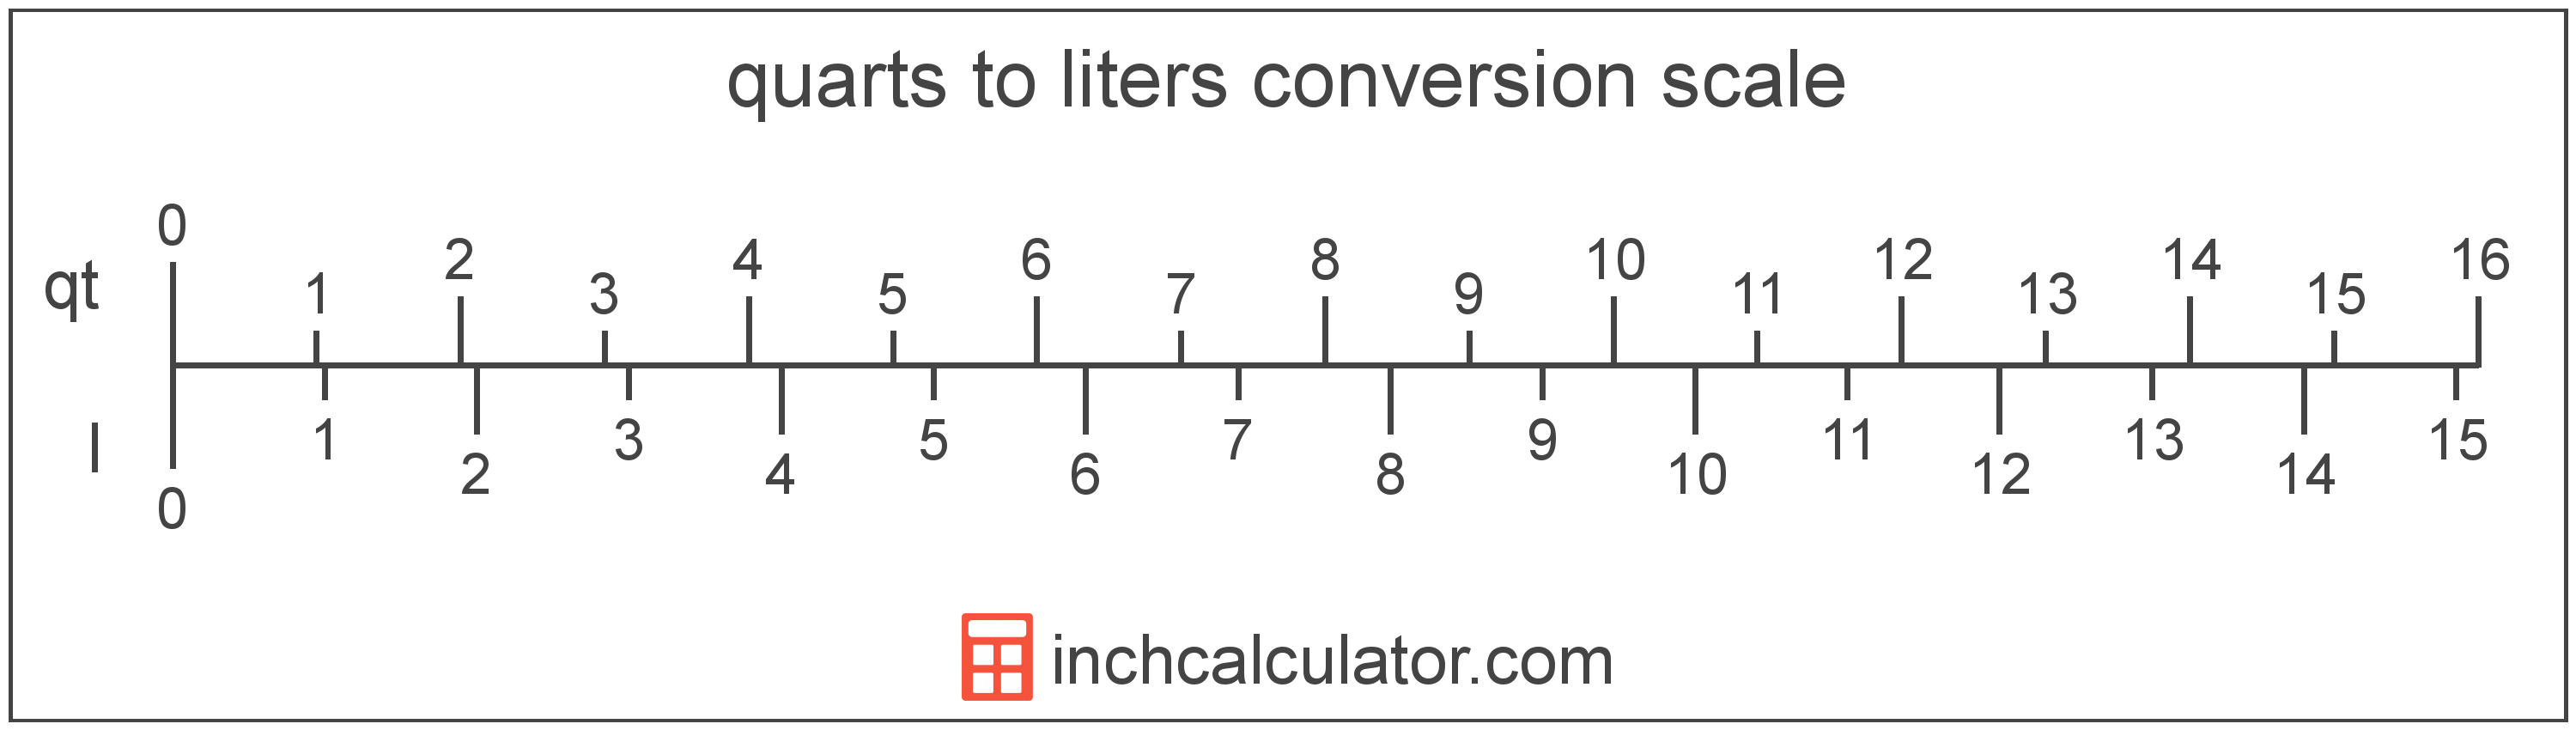 2 Quarts In Liter Quarts to Liters Conversion (qt to L) - Inch Calculator